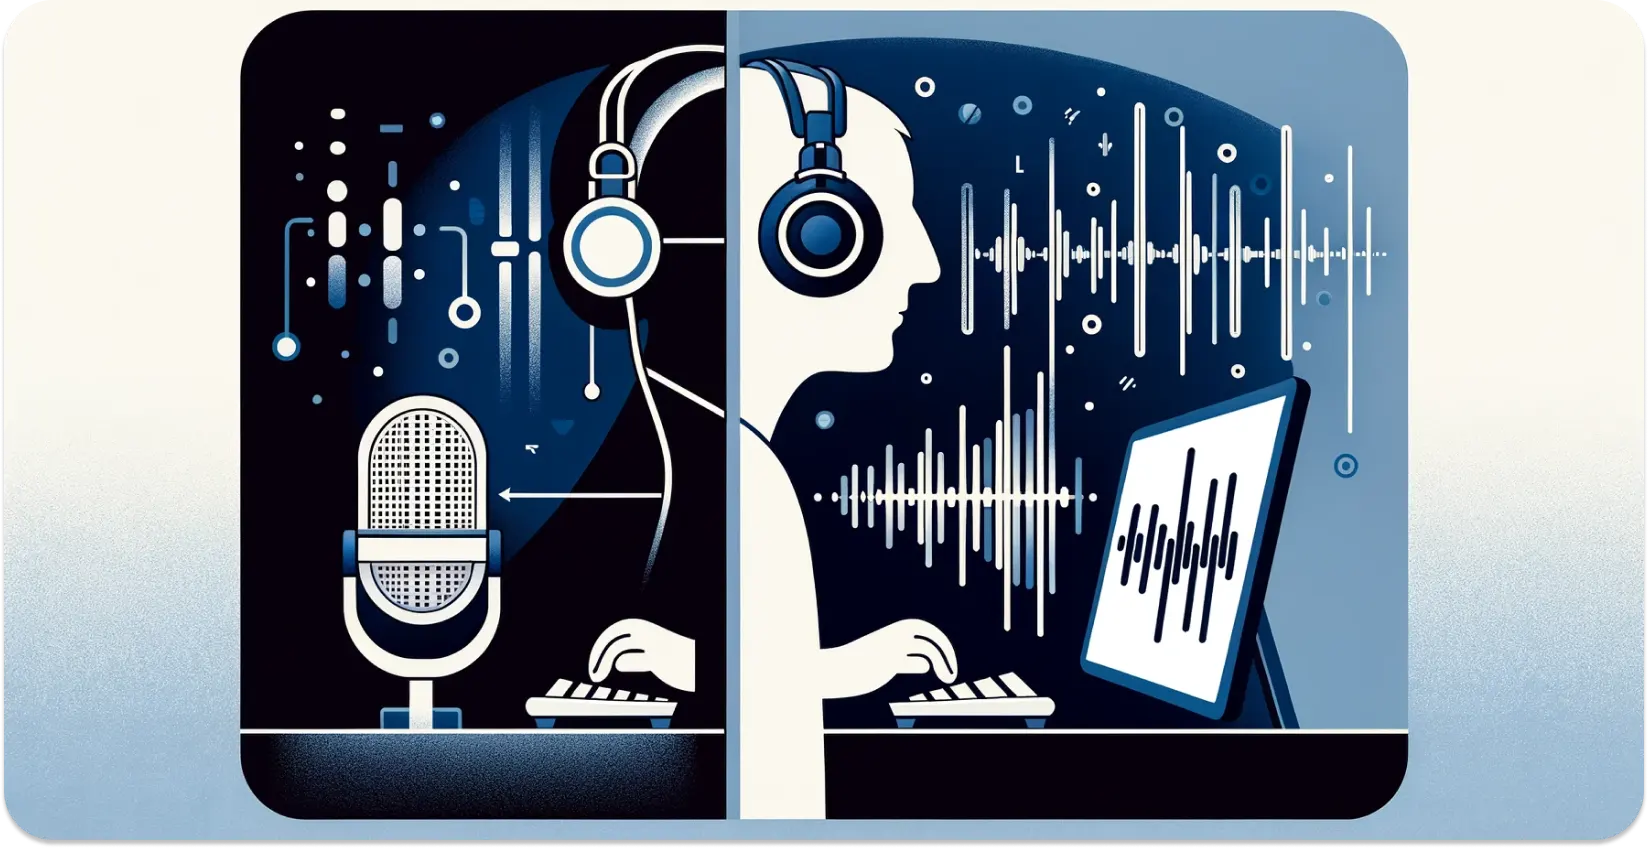 Representação estilizada de uma pessoa com auscultadores a transcrever áudio de um tablet, com ondas sonoras visuais.